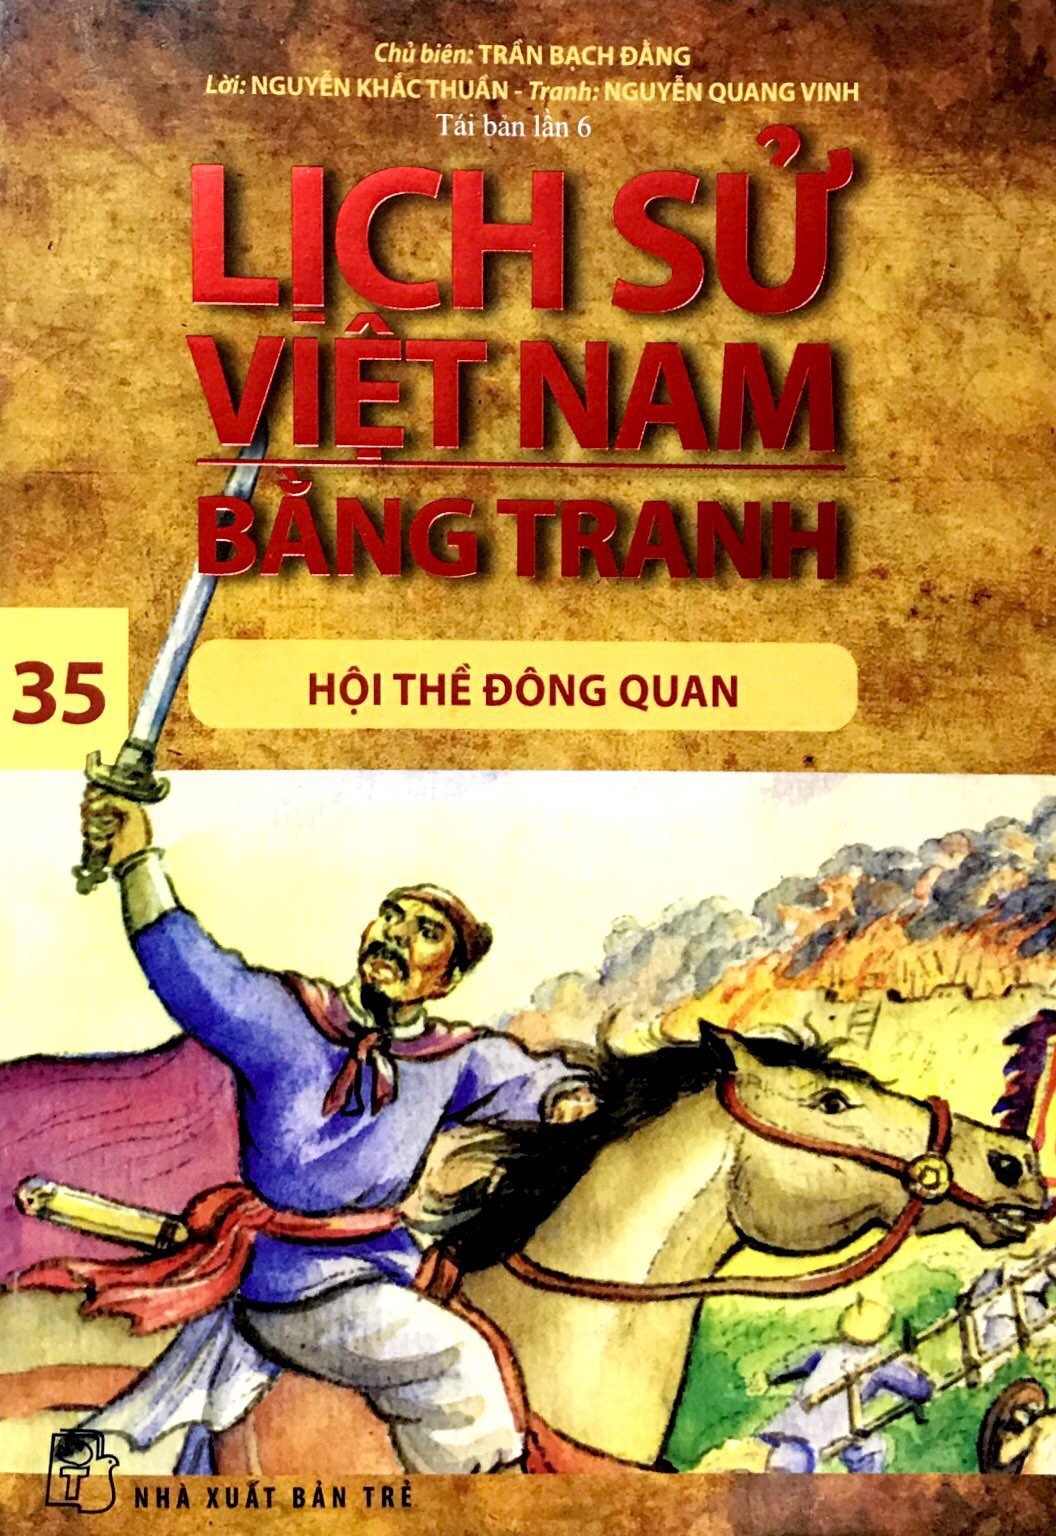 Lịch sử Việt Nam bằng tranh - Tập 35: Hội thề Đông Quan